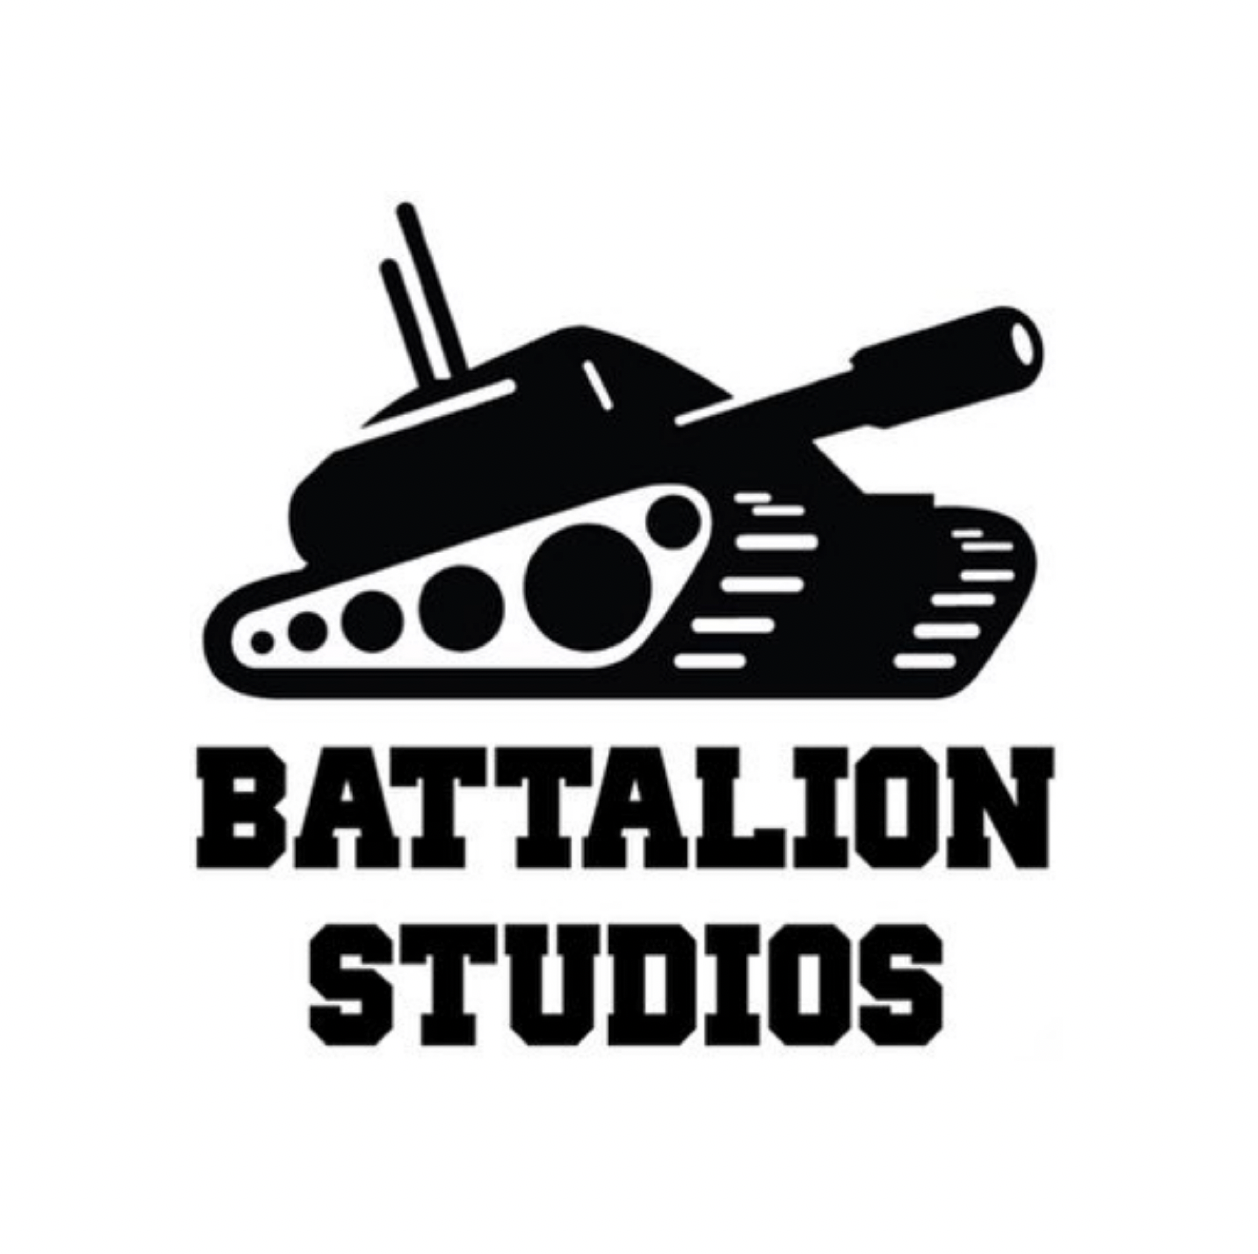 KRFK Sponsor - Battalion Studios.png